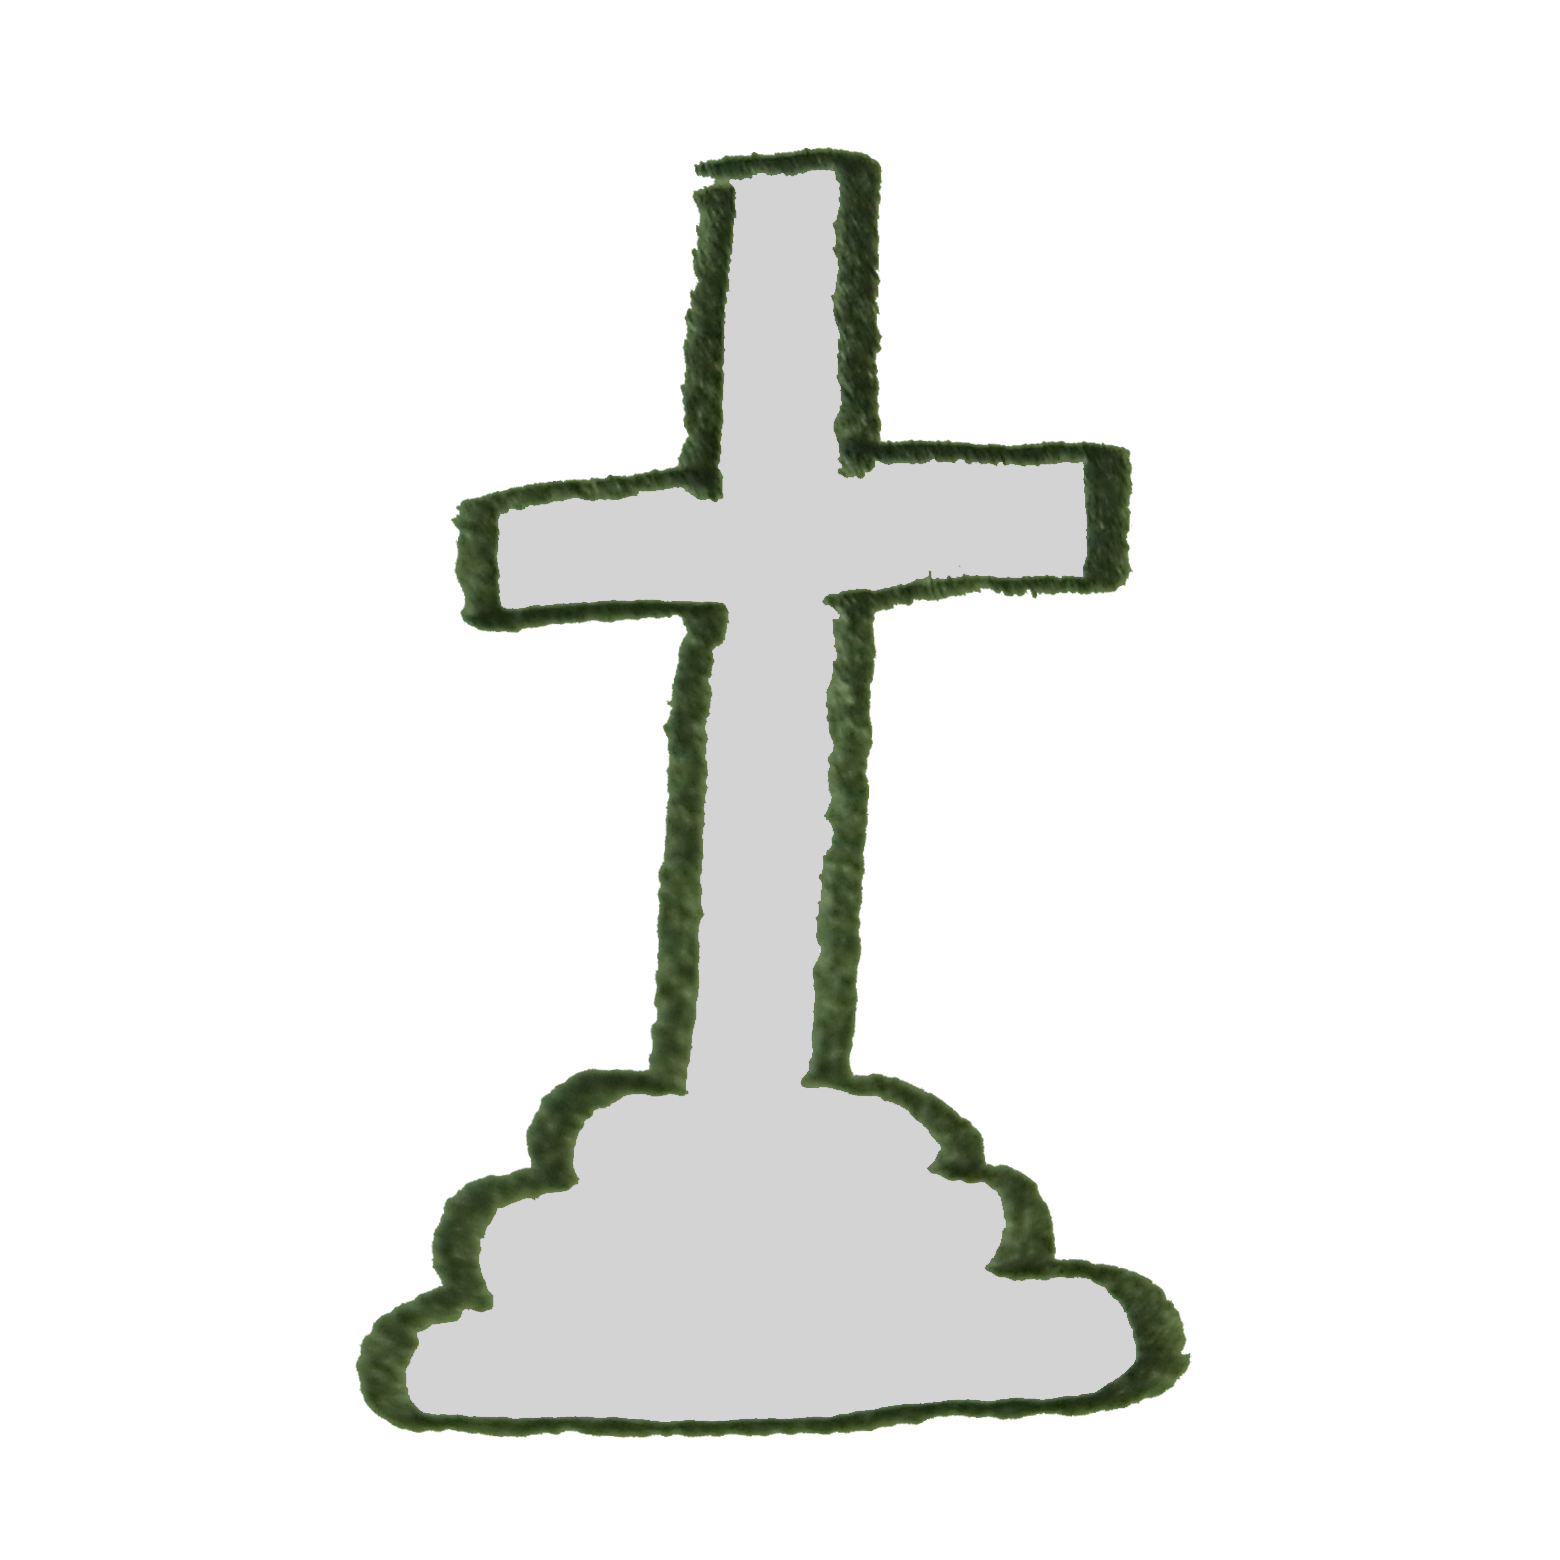 十字架のお墓のイラスト ゆるくてかわいい無料イラスト素材屋